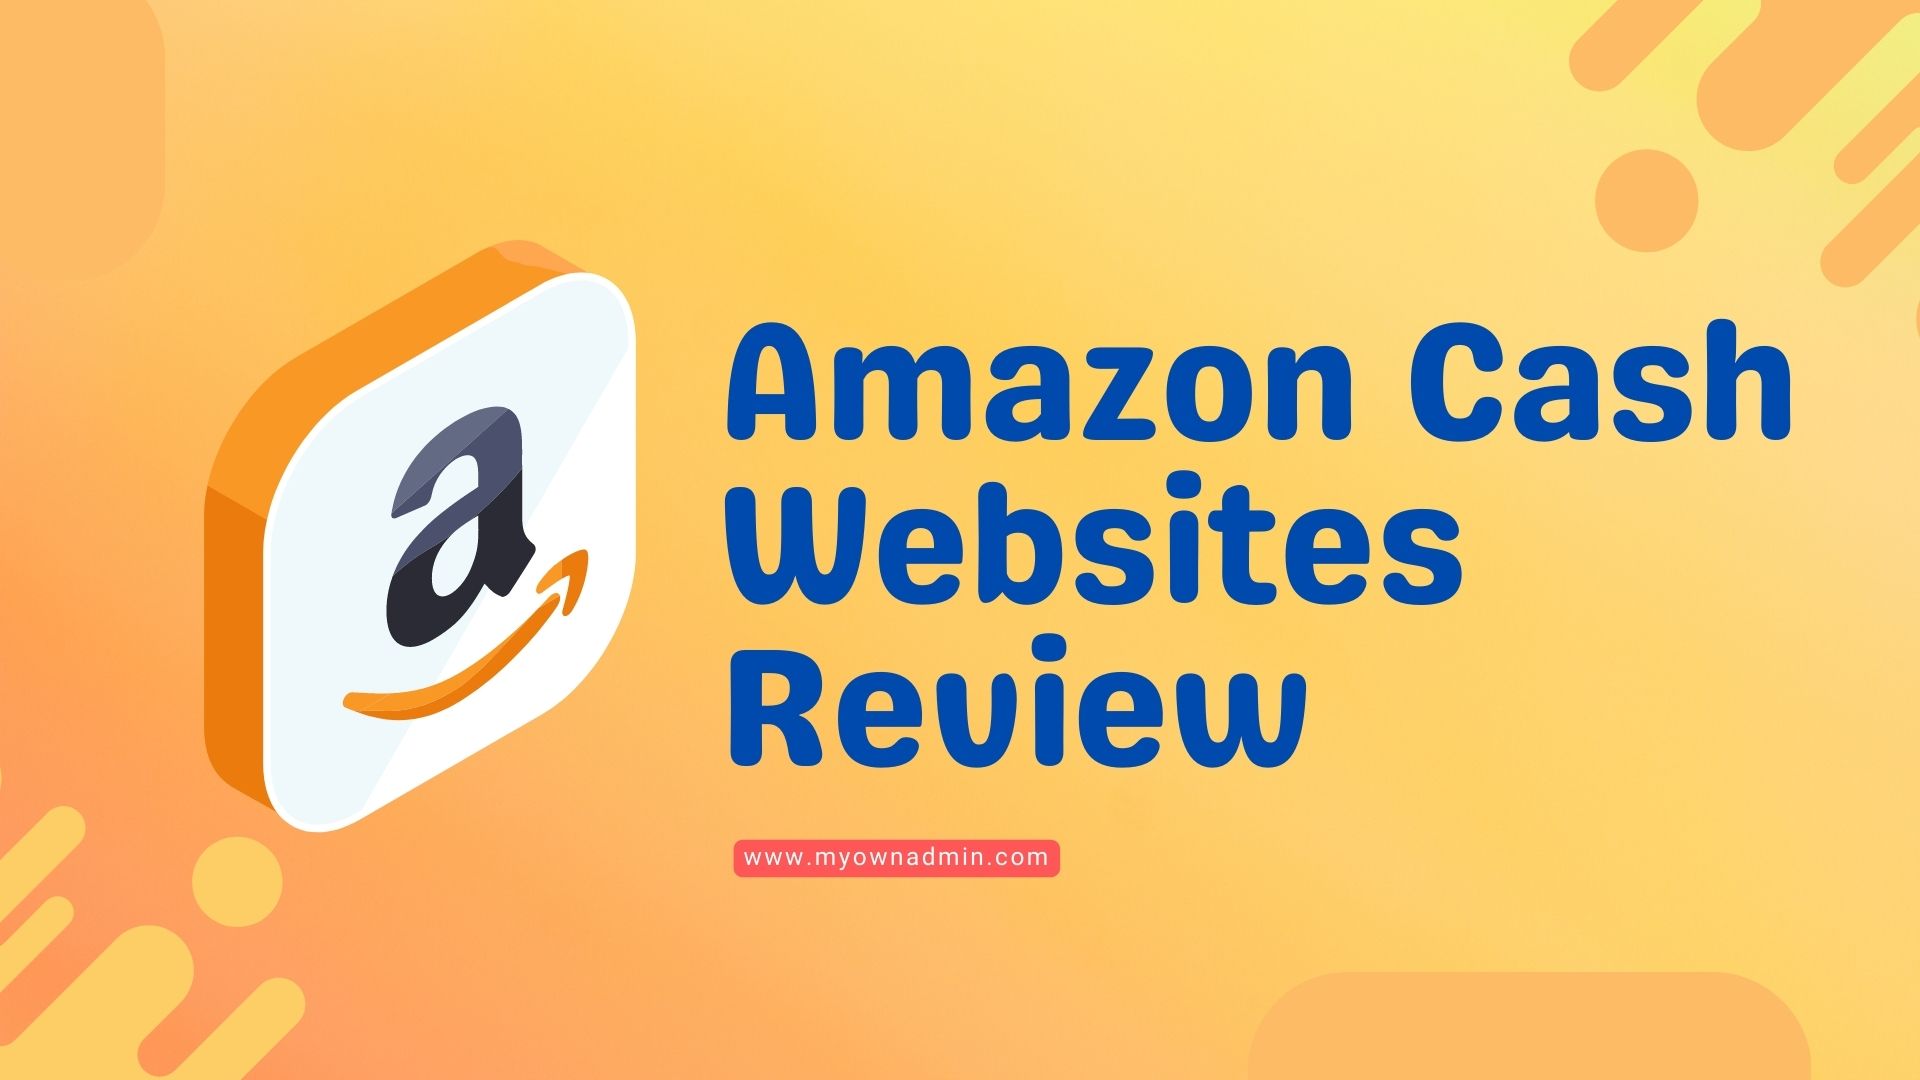 Amazon Cash Websites Review